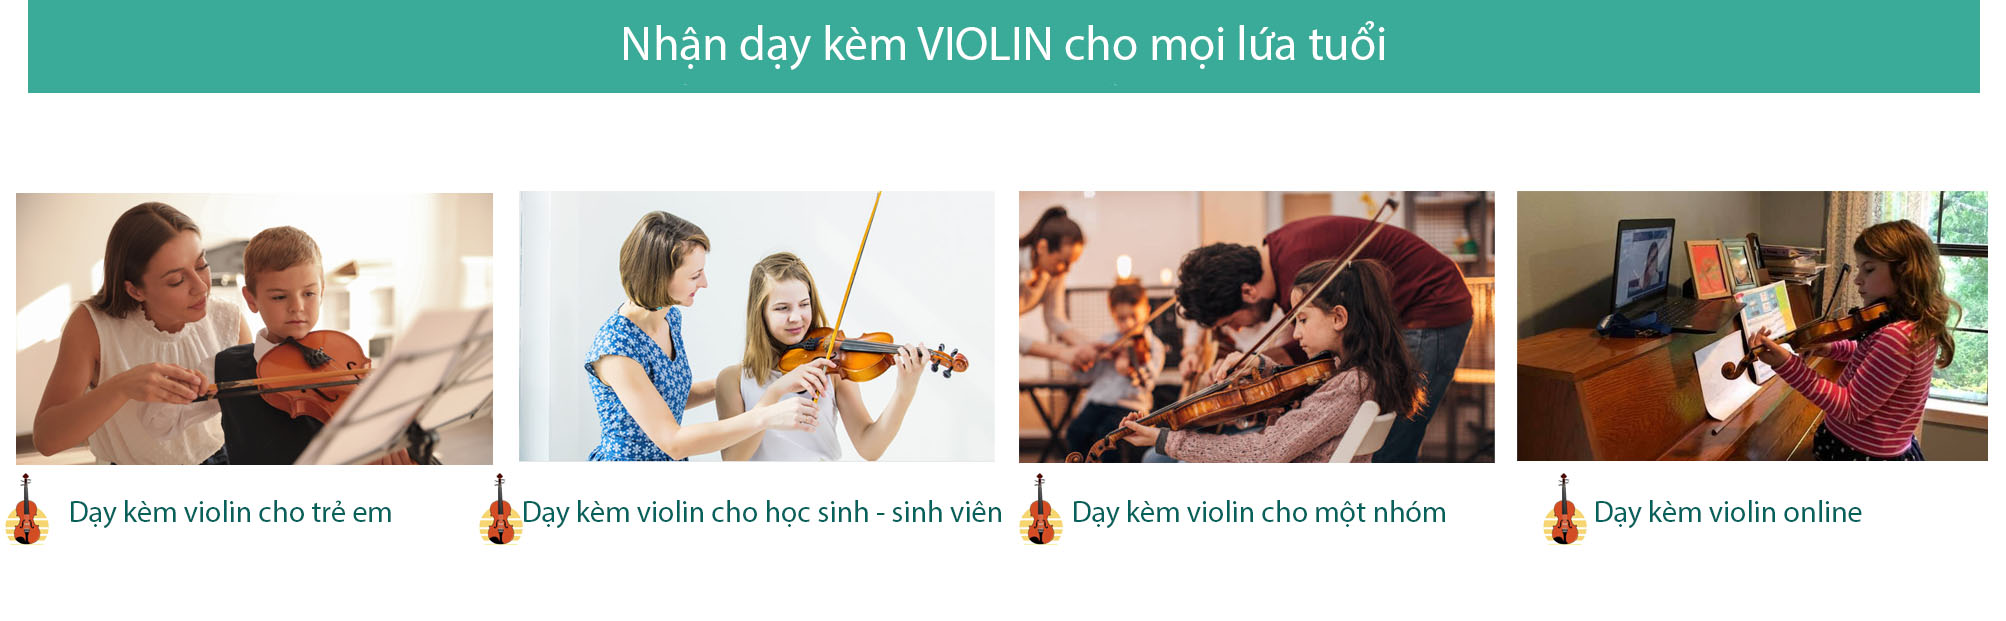 day kem violin